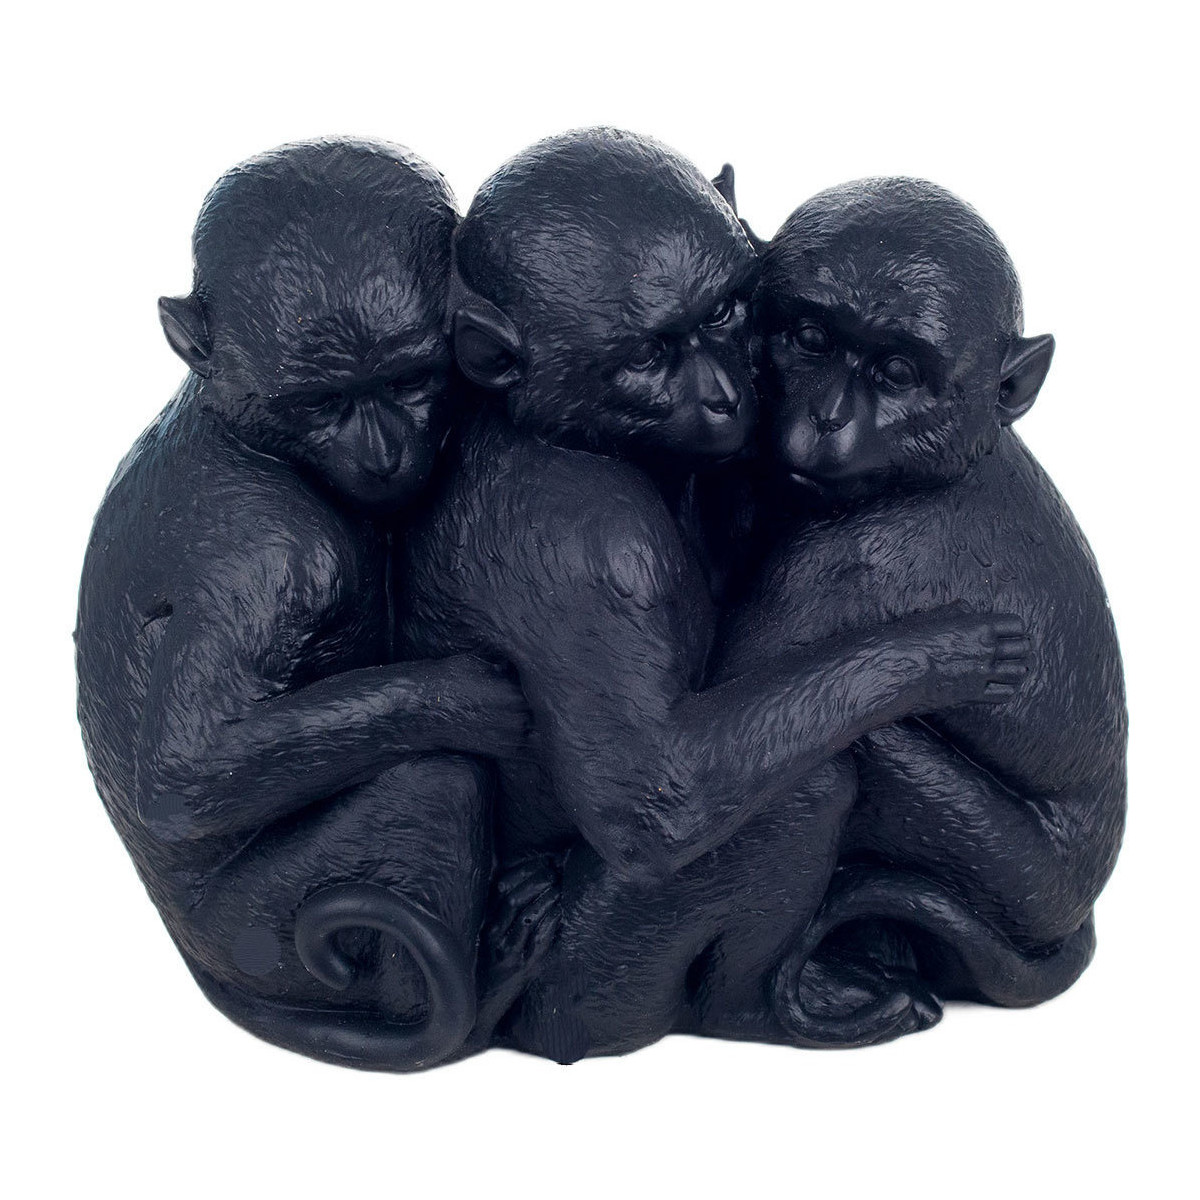 Casa Figuras decorativas Signes Grimalt Figura 3 Monos Negro